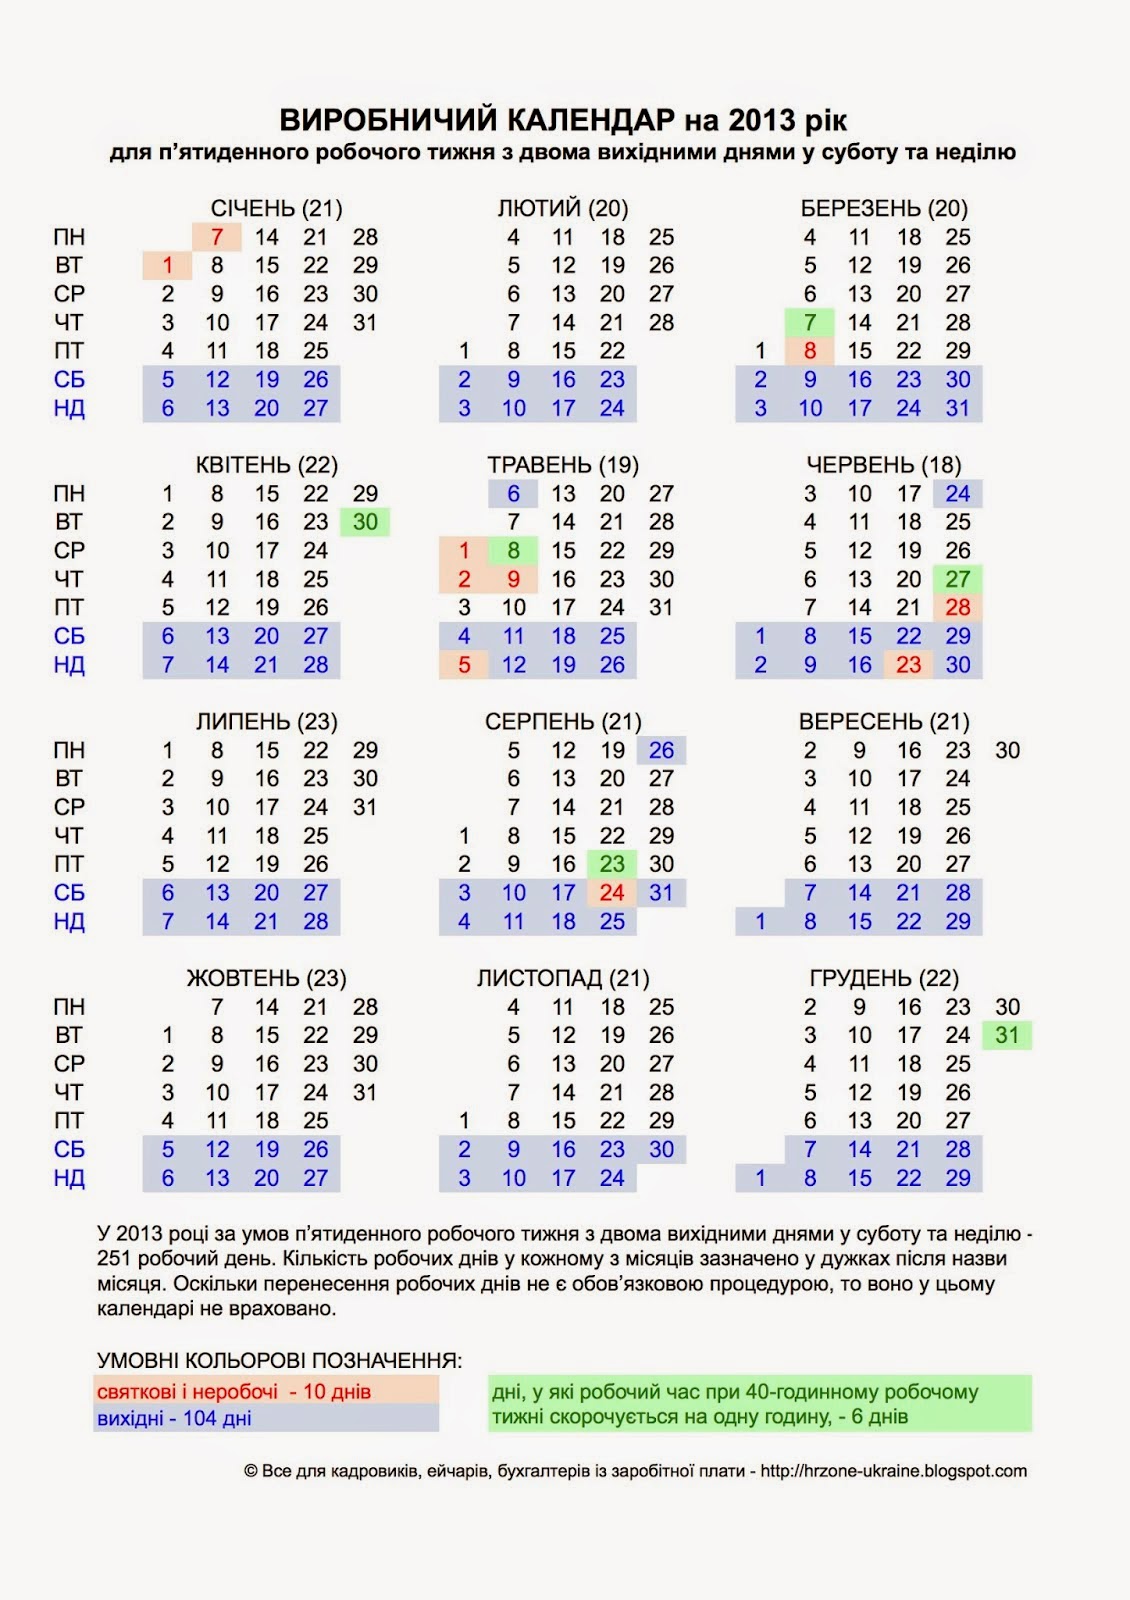 Выходные 2014 года. Производственный календарь за 2014 год. Производственный календарь за 2014 год при пятидневной рабочей неделе. Календарь праздничных дней в 2014 году. Производственный календарь на 2014 год с праздниками.